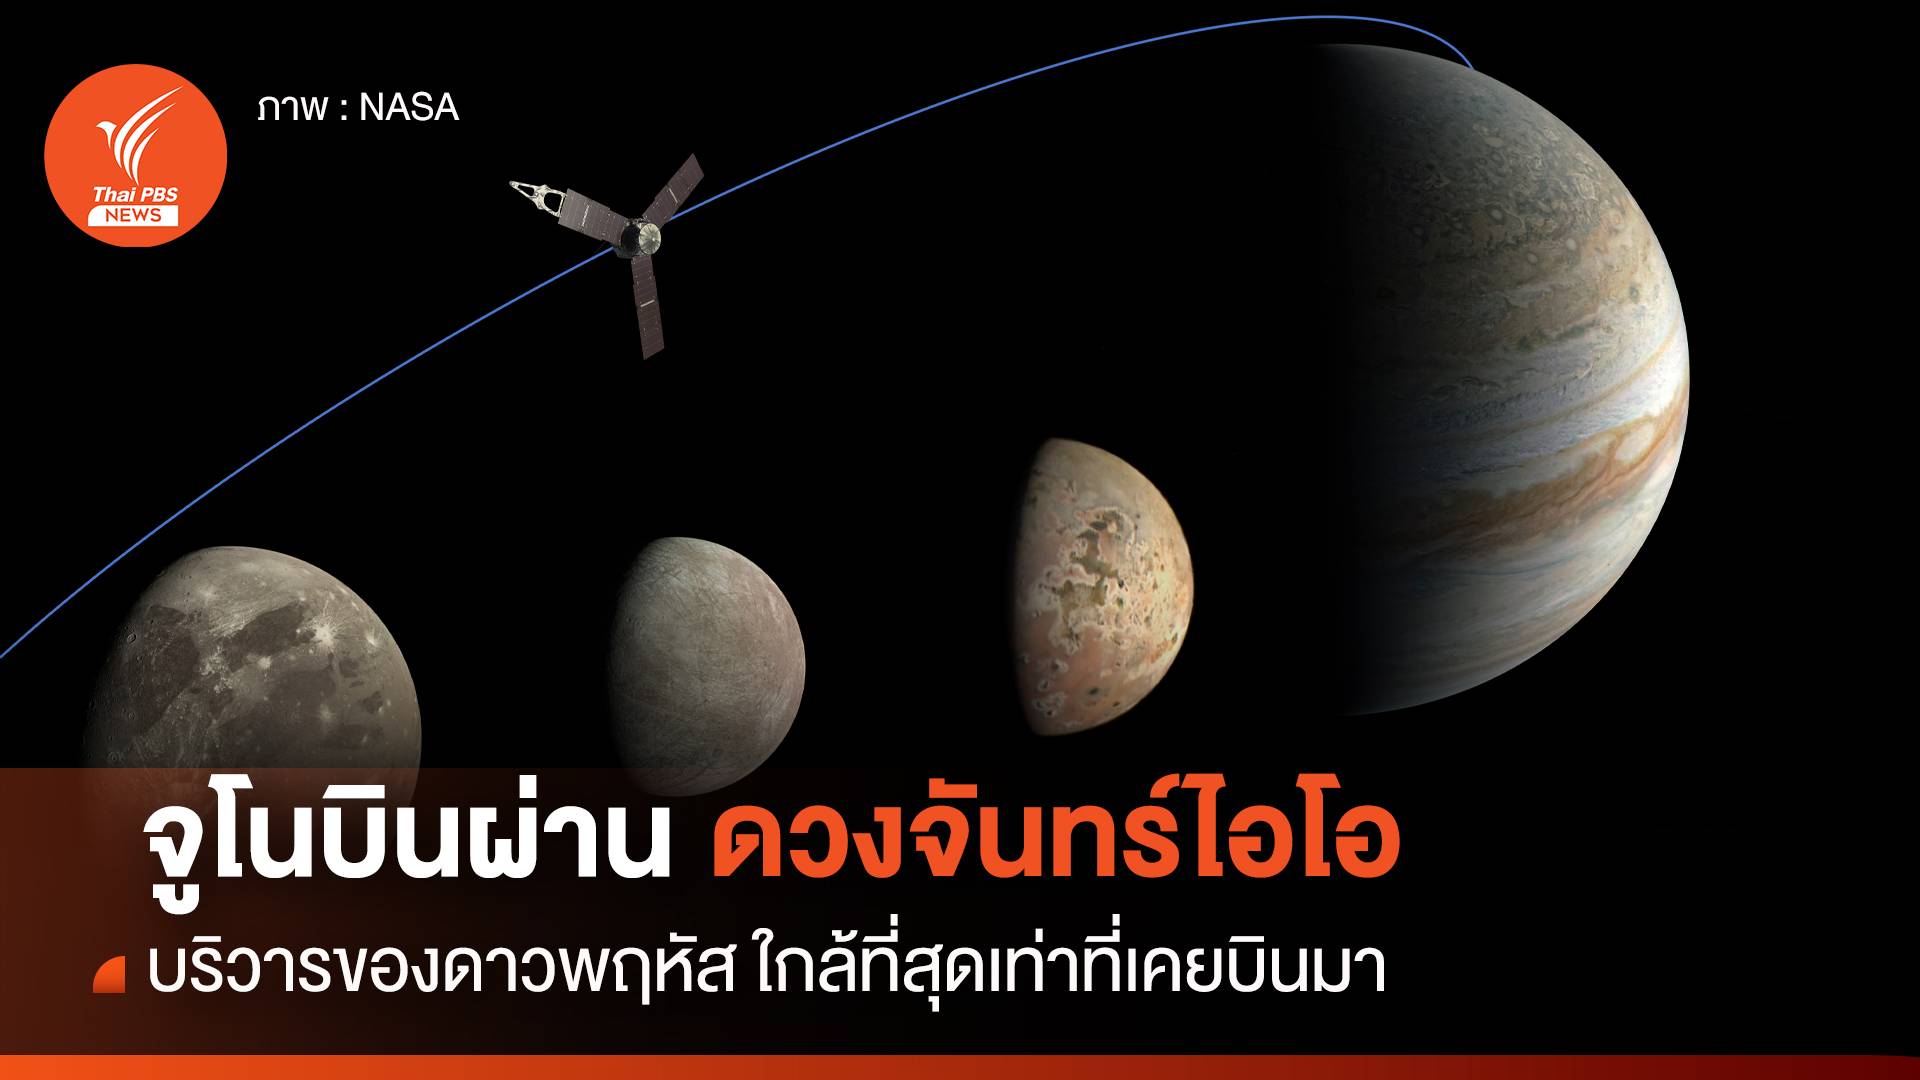 ยานจูโนบินผ่านดวงจันทร์ไอโอ 30 กรกฎาคม 2023 ใกล้ที่สุดเท่าที่เคยบินมา